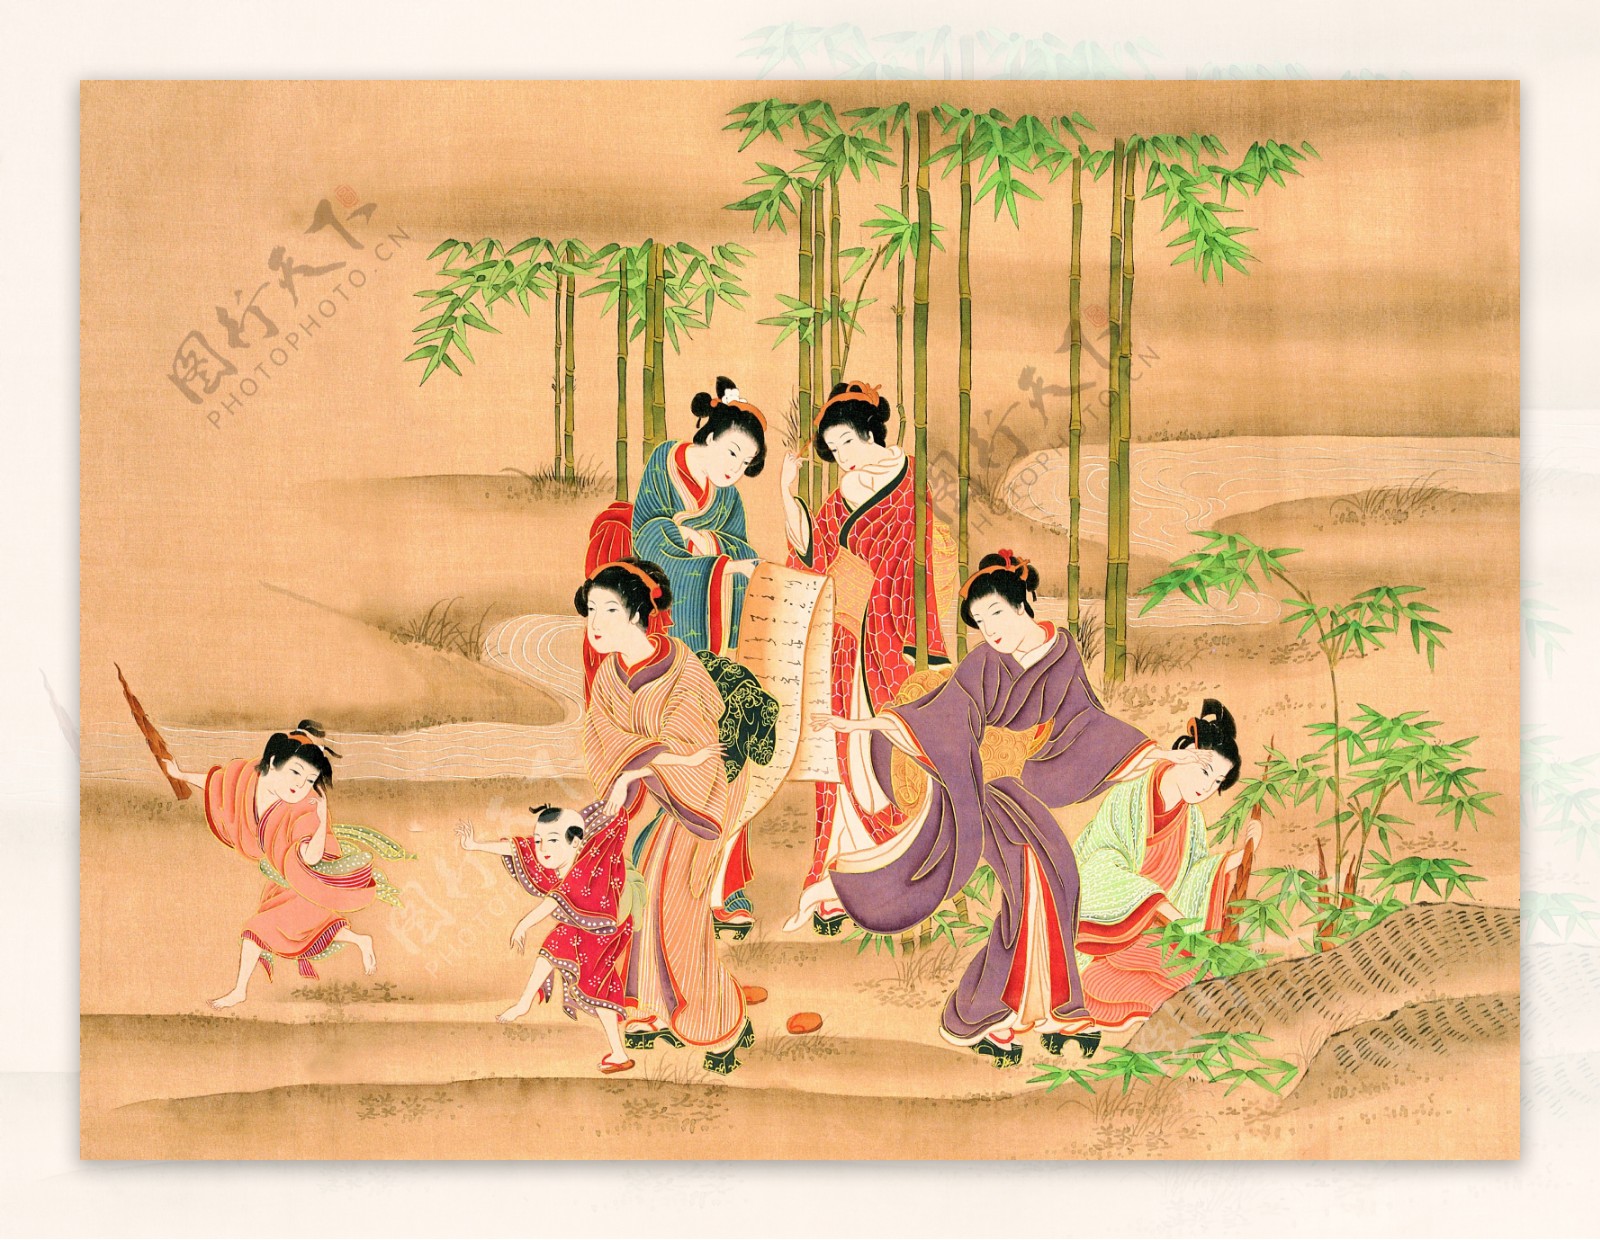 日本传统文化图片